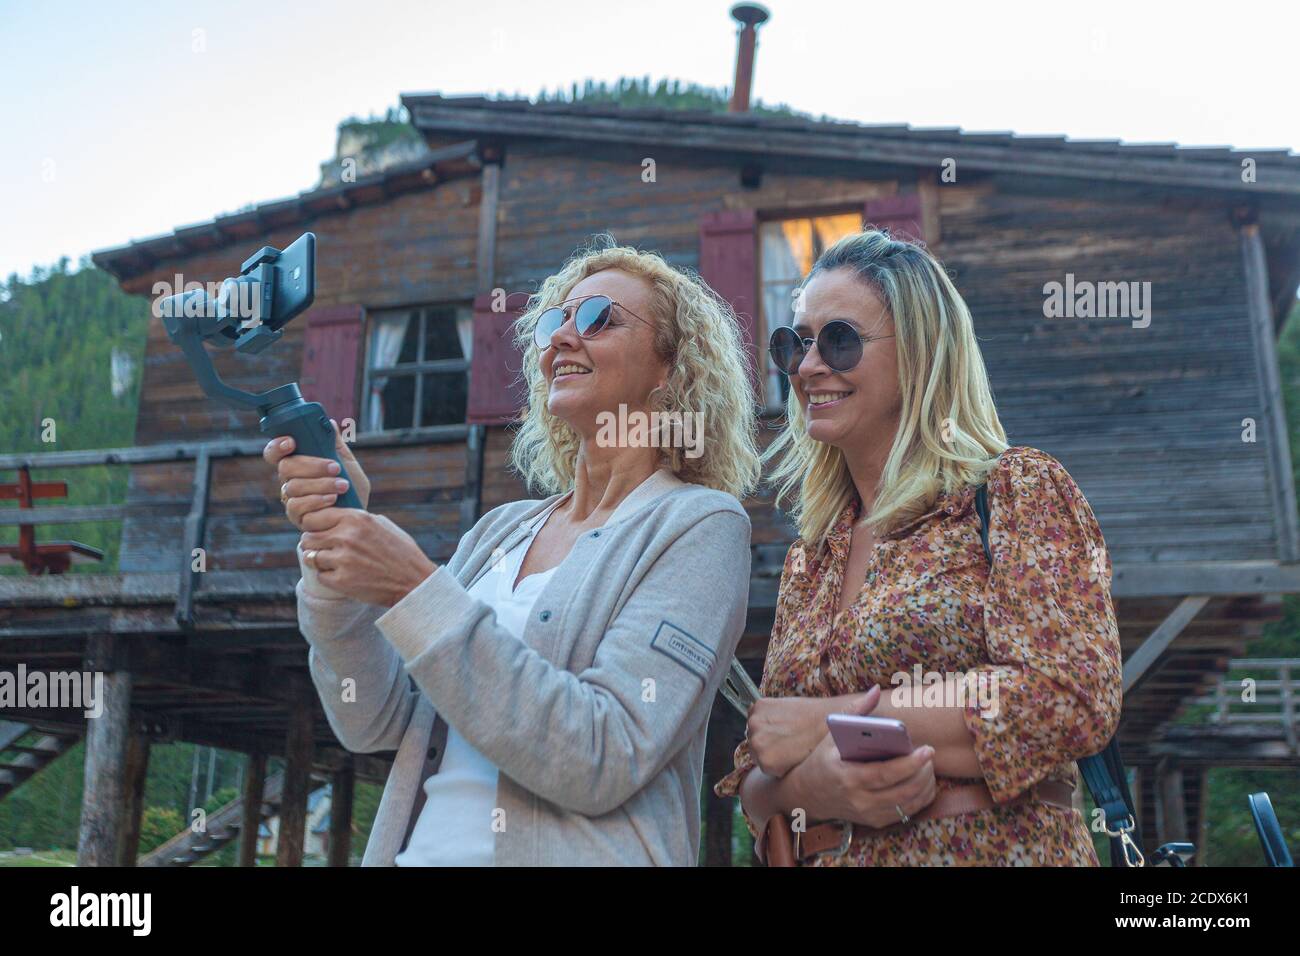 Paar brasilianische blonde Frauen beobachten Telefon mit Haus des Sees Prags Hintergrund, Südtirol, Italien Stockfoto